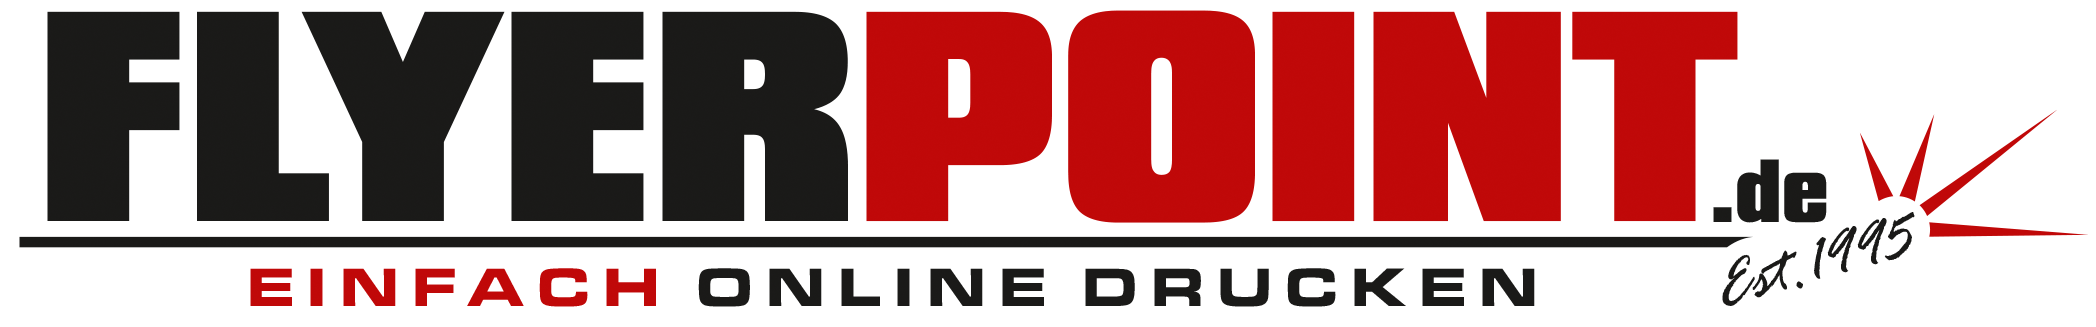 flyerpoint-logo